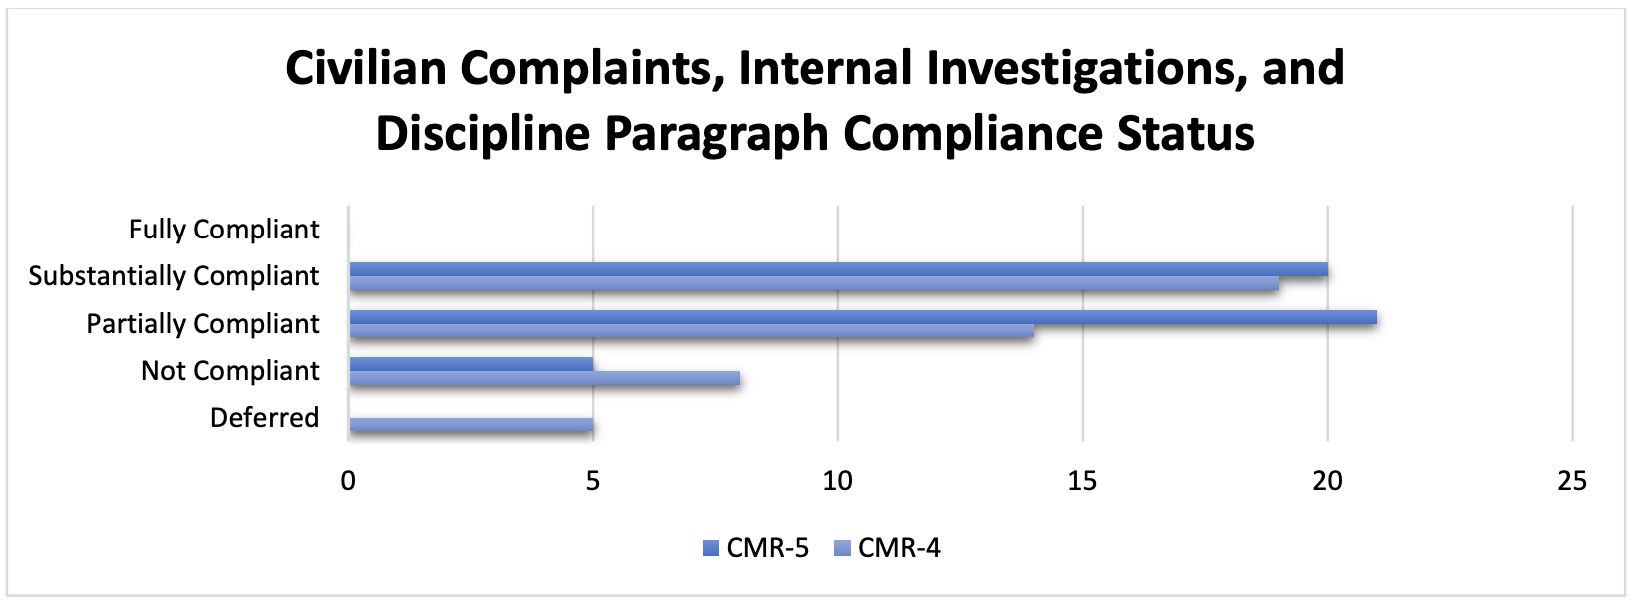 Figure 7. Civilian Complaints, Internal Investigations, and Discipline: Paragraph Compliance Status